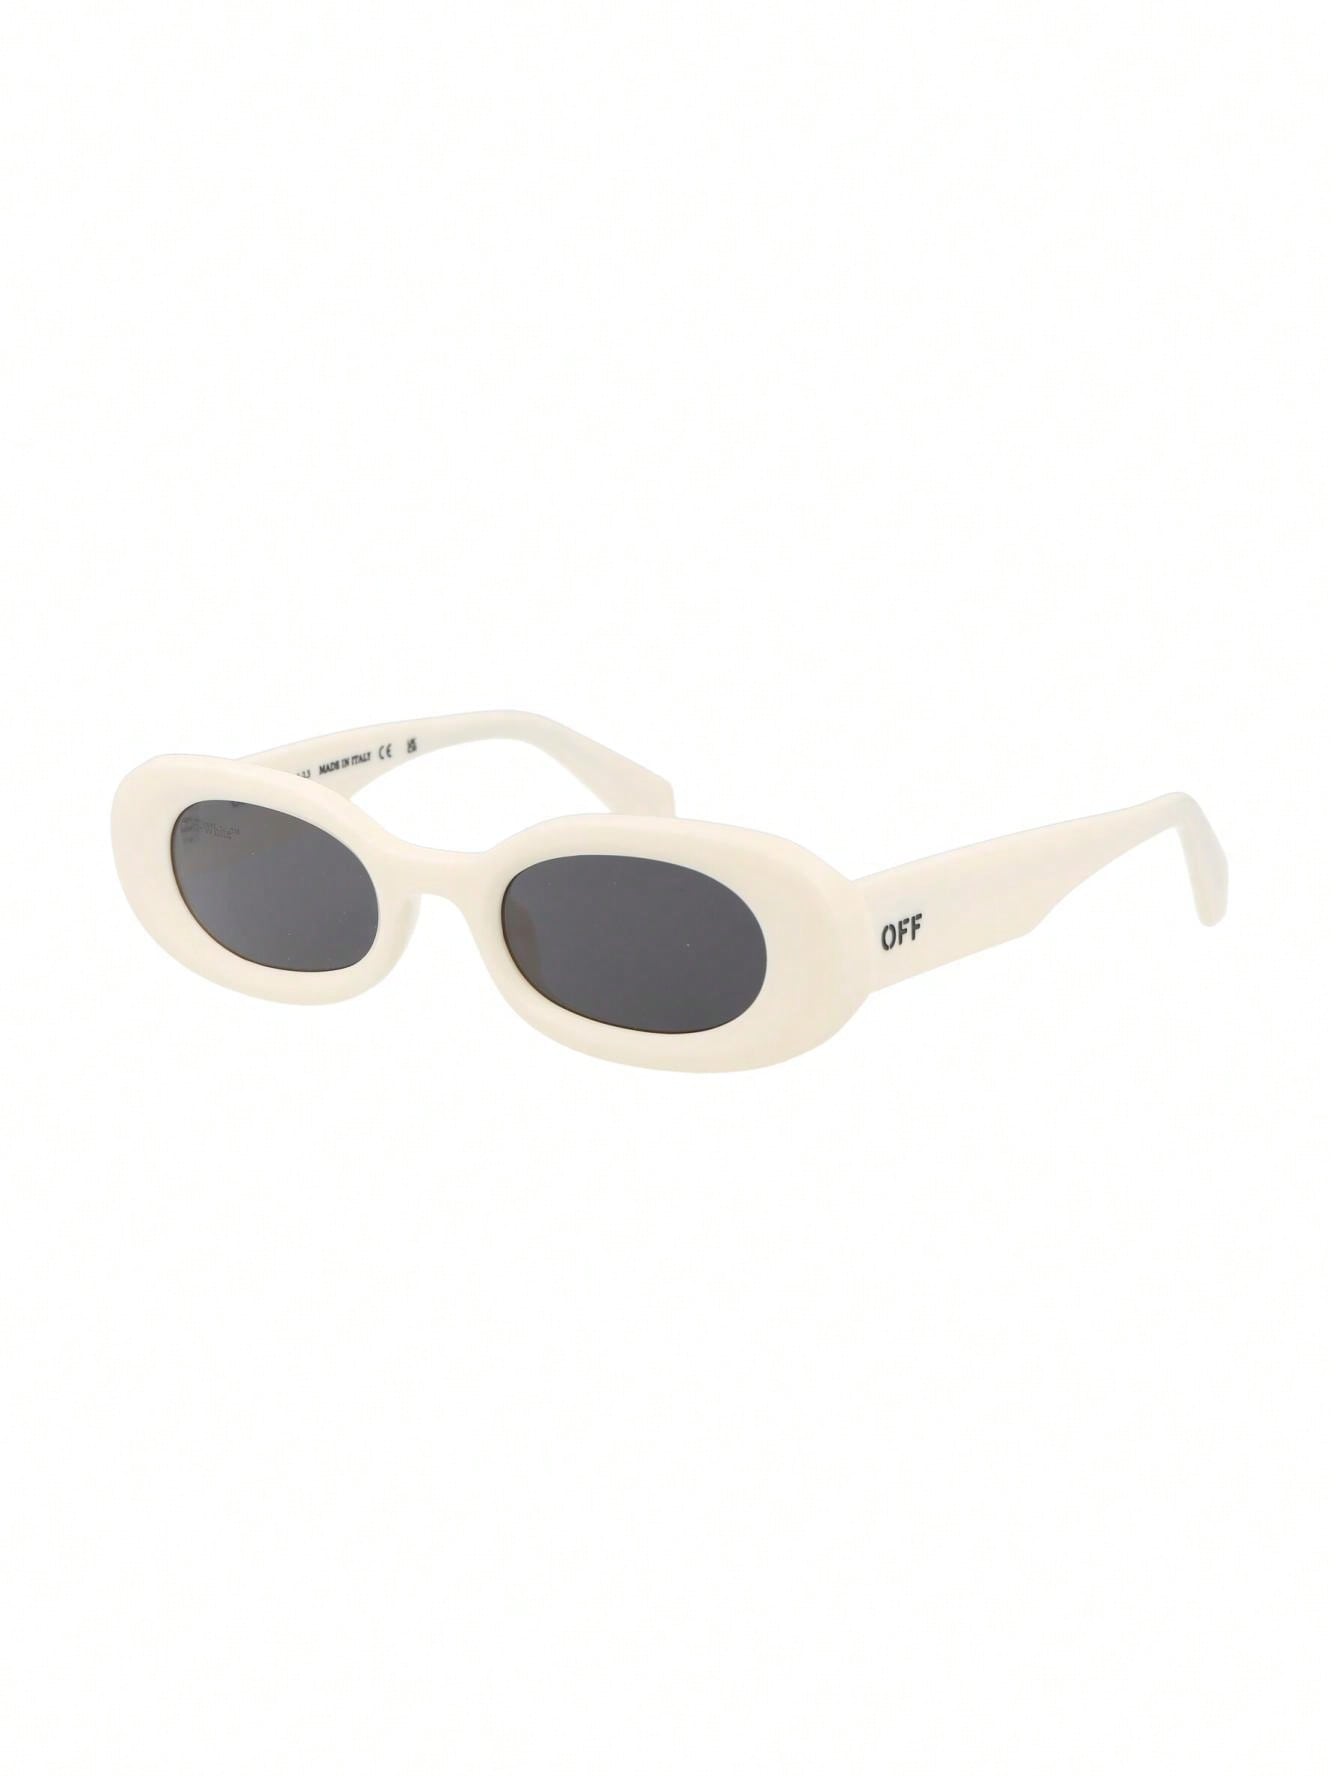 зеленые солнцезащитные очки manchester off white Мужские солнцезащитные очки Off-White БЕЛЫЕ OERI087F23PLA0010107, белый